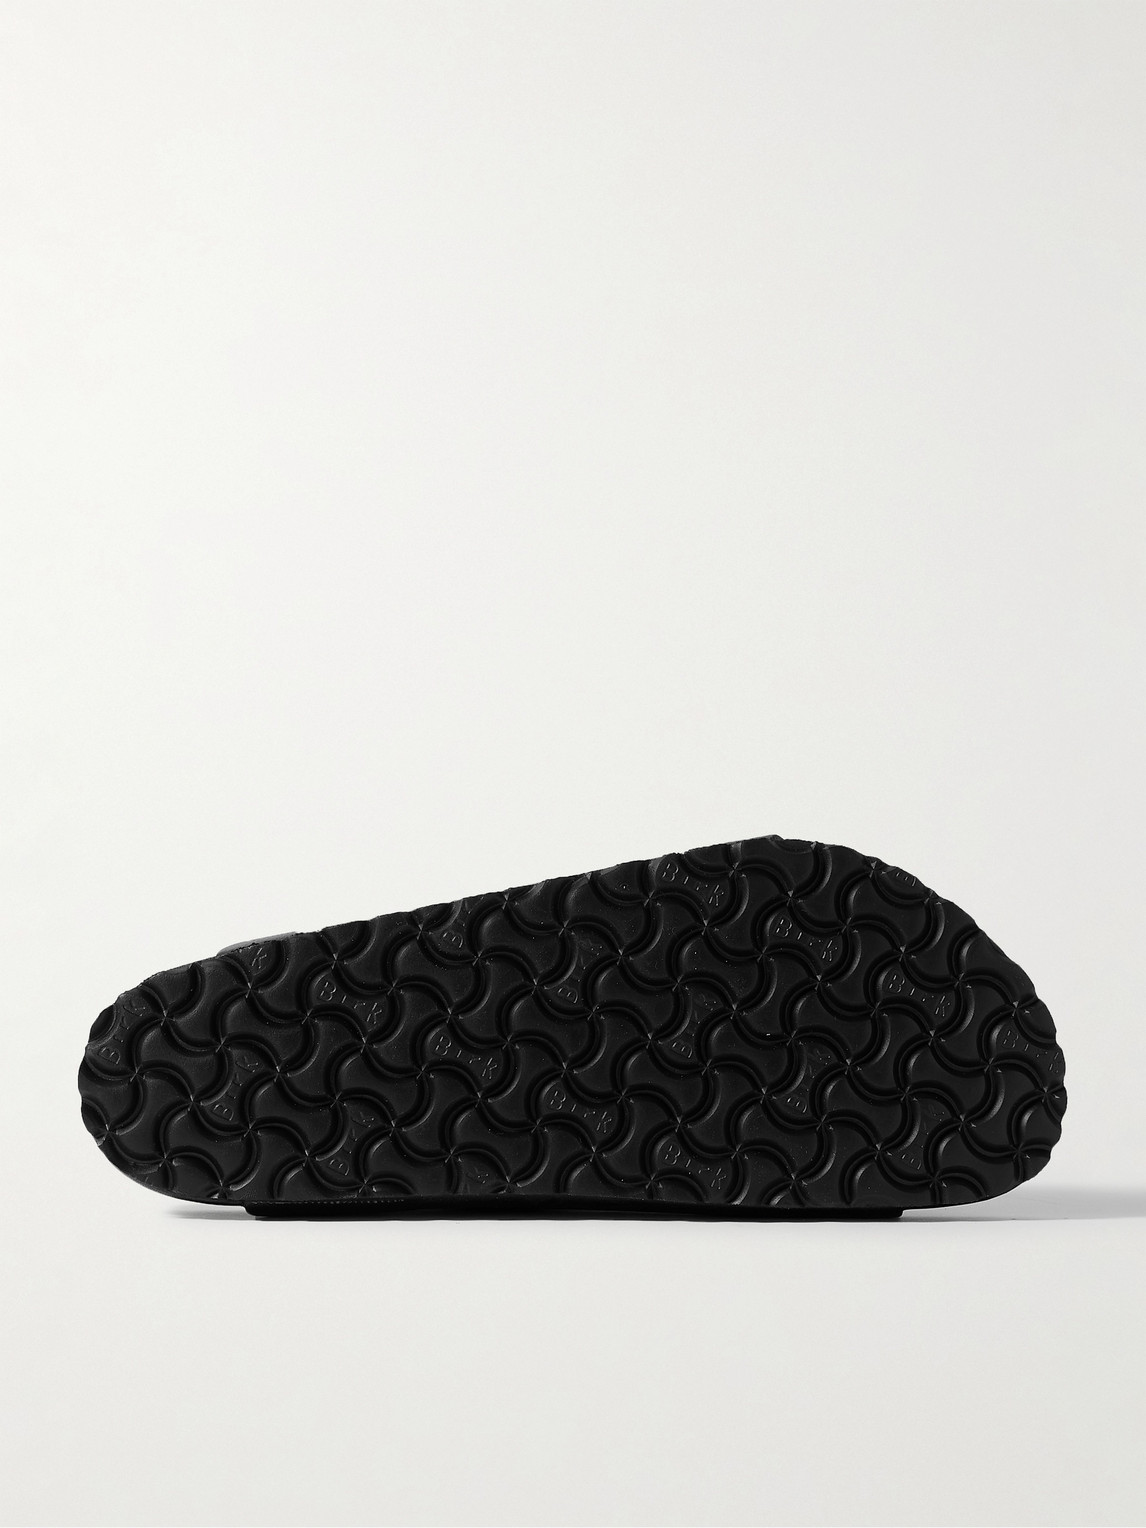 Shop Birkenstock Arizona Exquisite Full-grain Leather Sandals In Black